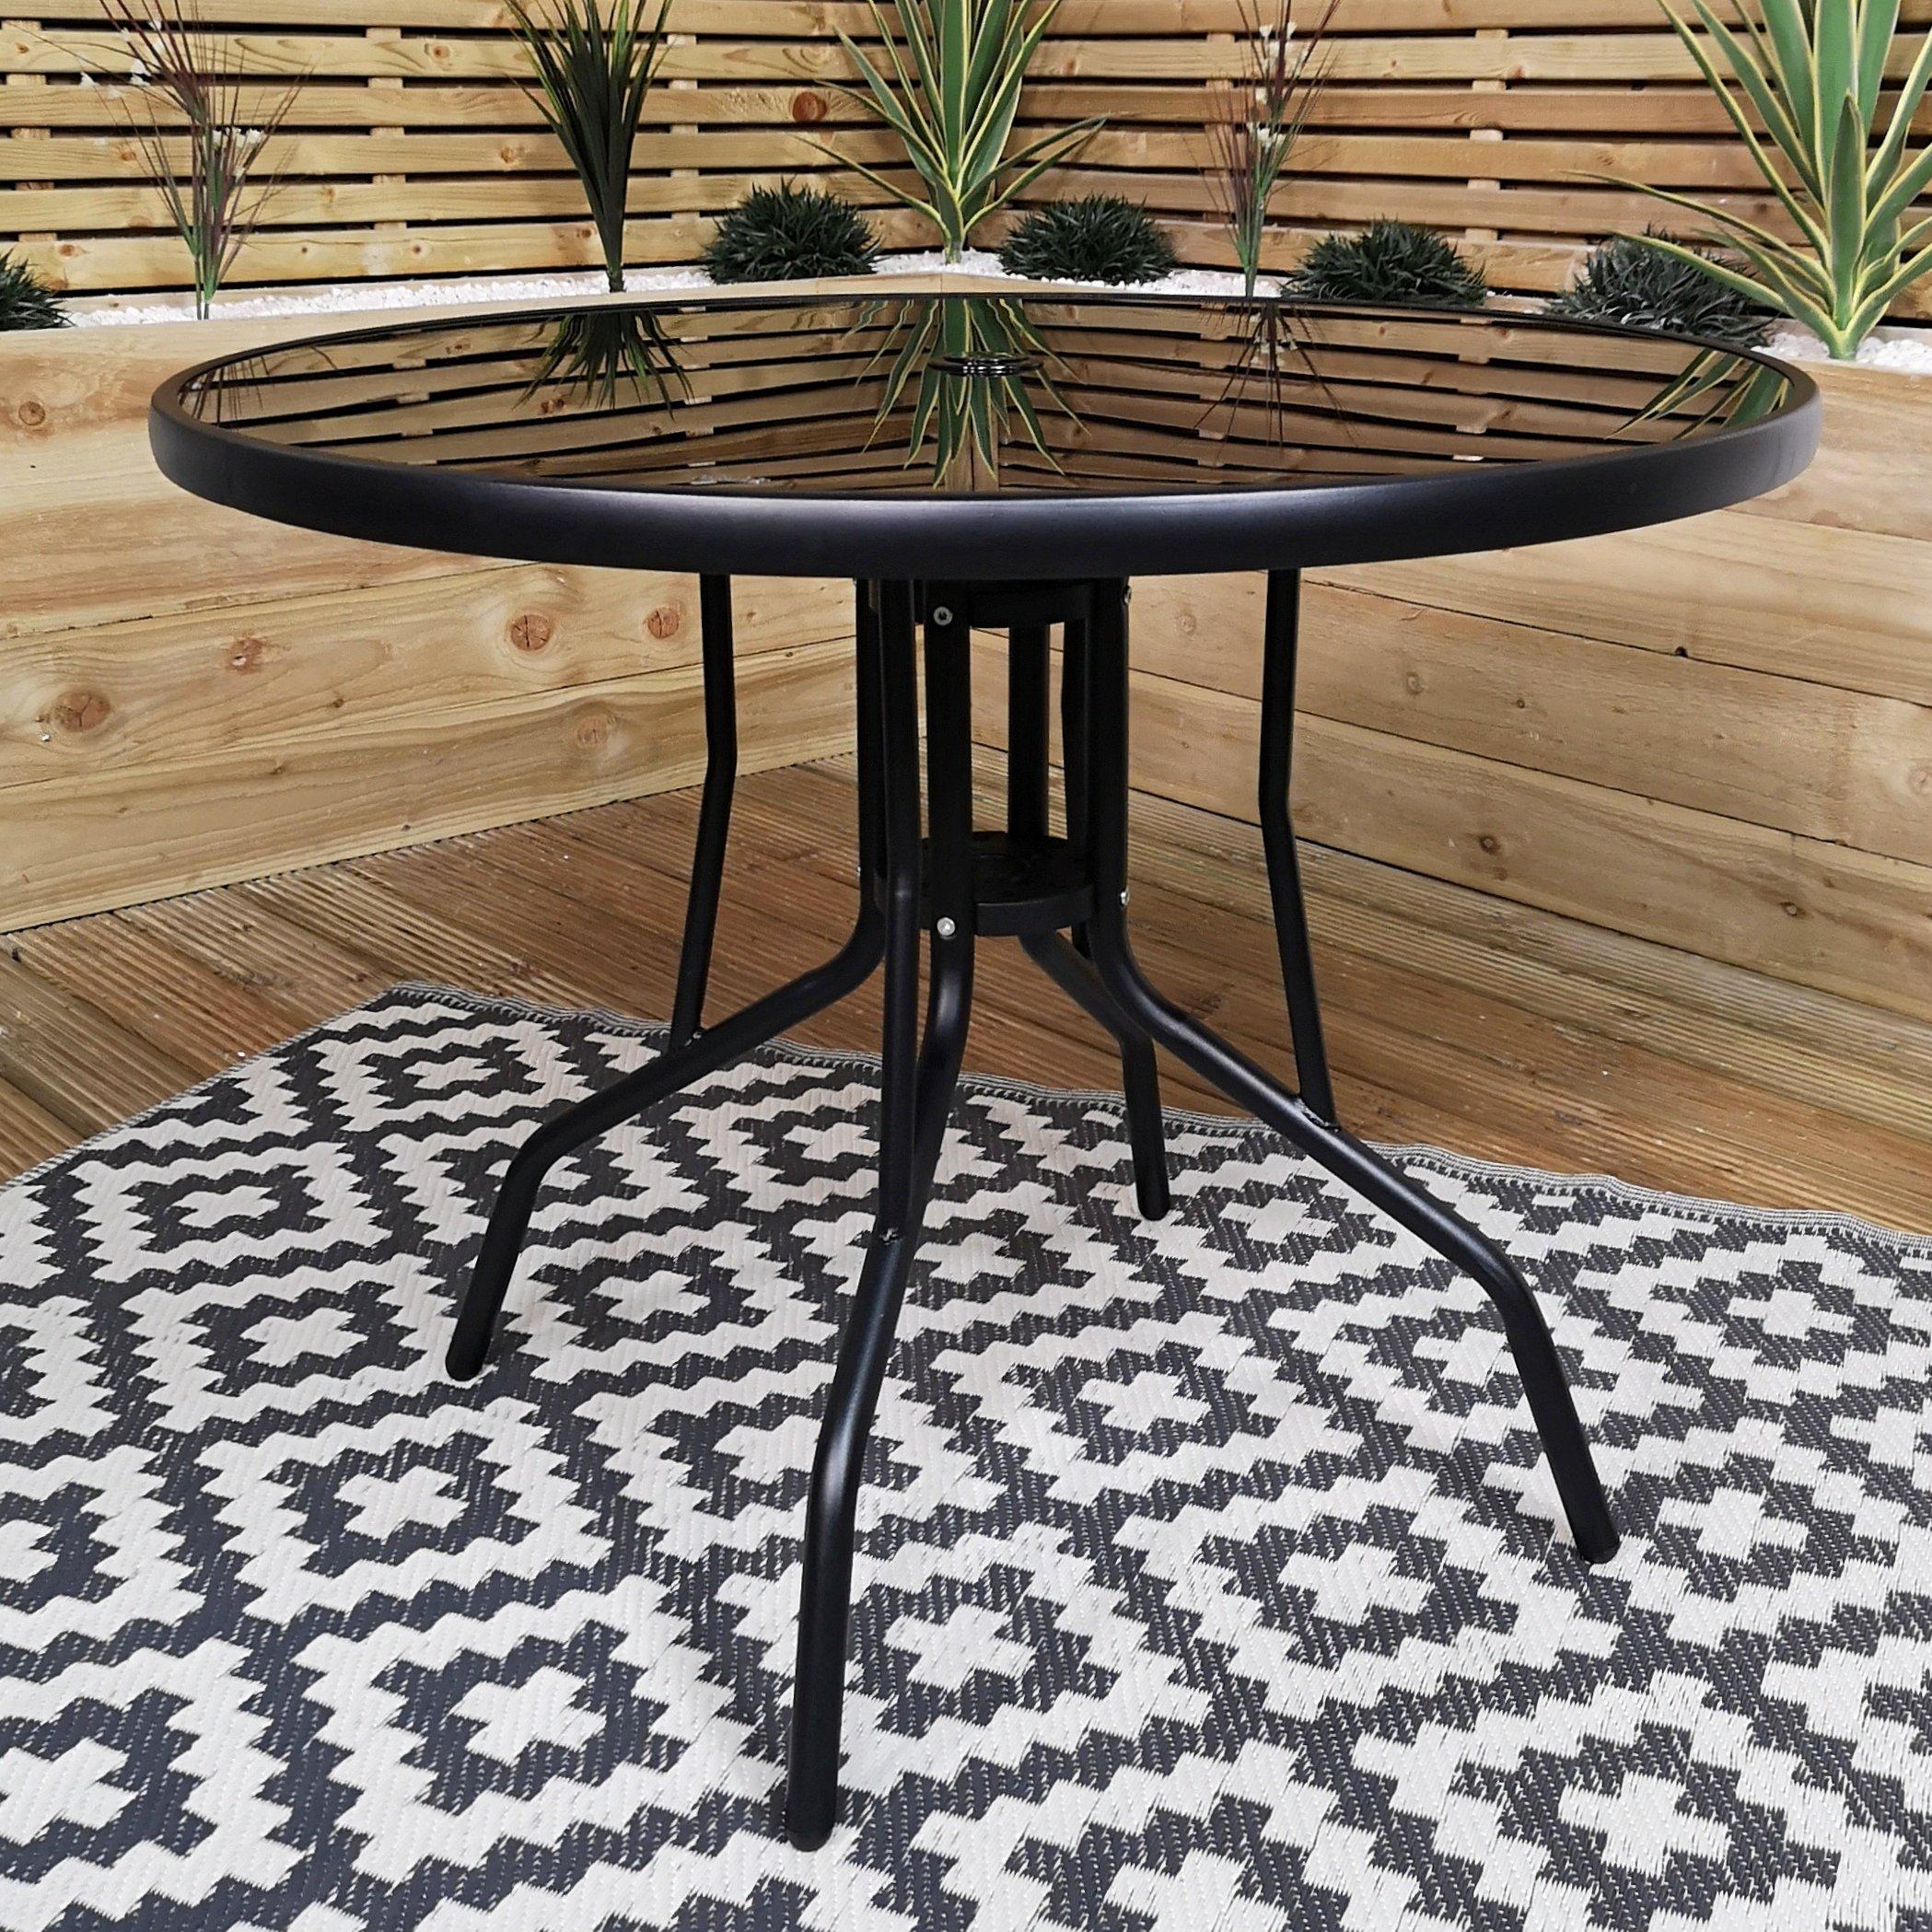 Photos - Garden Furniture 4 Person Round Black Garden Patio Table with Glass Top & Parasol Hole